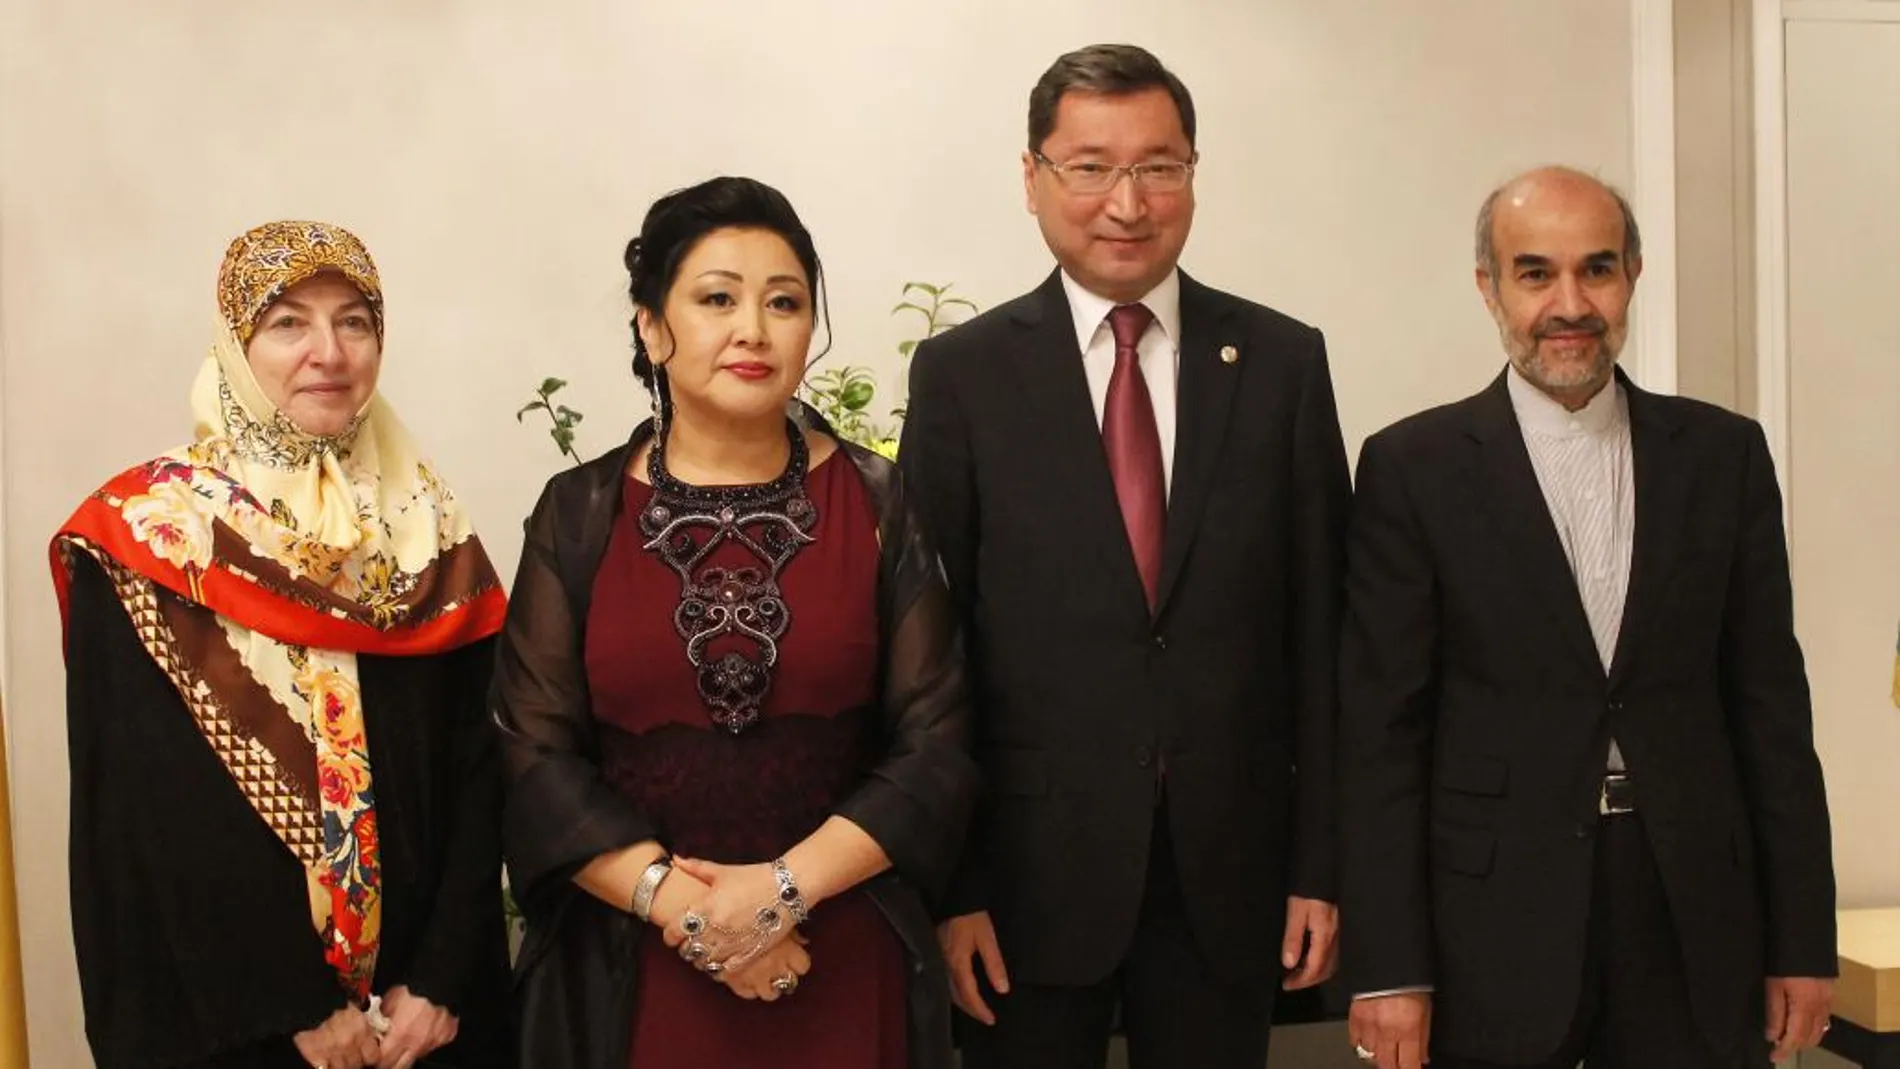 El embajador kazajo Bakhyt Dyussenbayev y su señora, (en el centro), escoltados por el embajador de Irán Mohammad Hassan Fadaifard y su esposa.